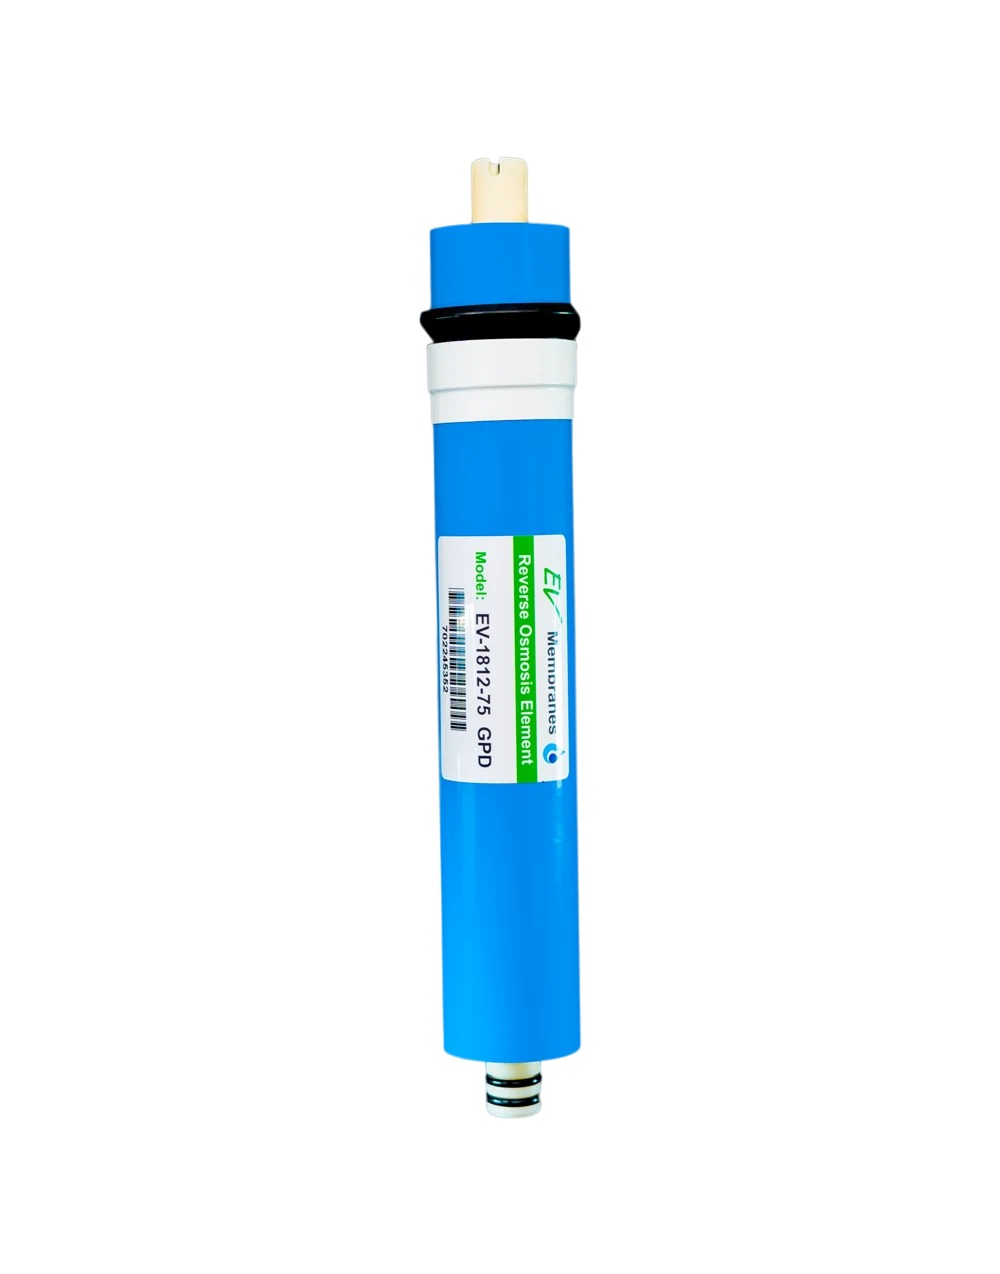 AquaTurk Membrane Water Filter Cartridge